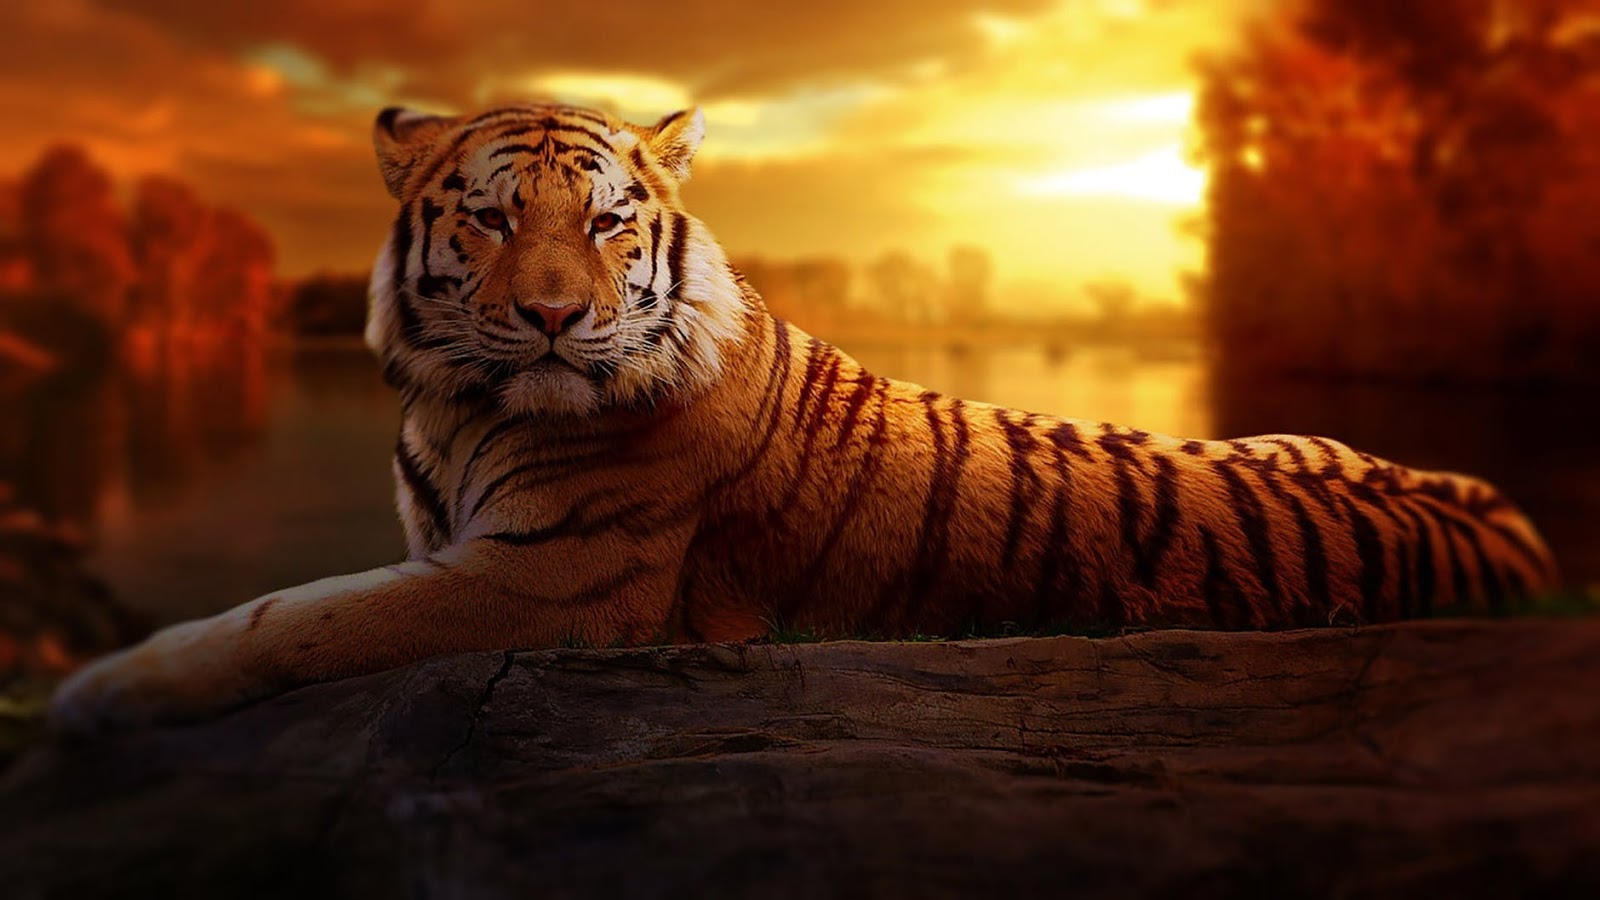 tiger wallpaper free download,tiger,wildlife,bengal tiger,mammal,felidae